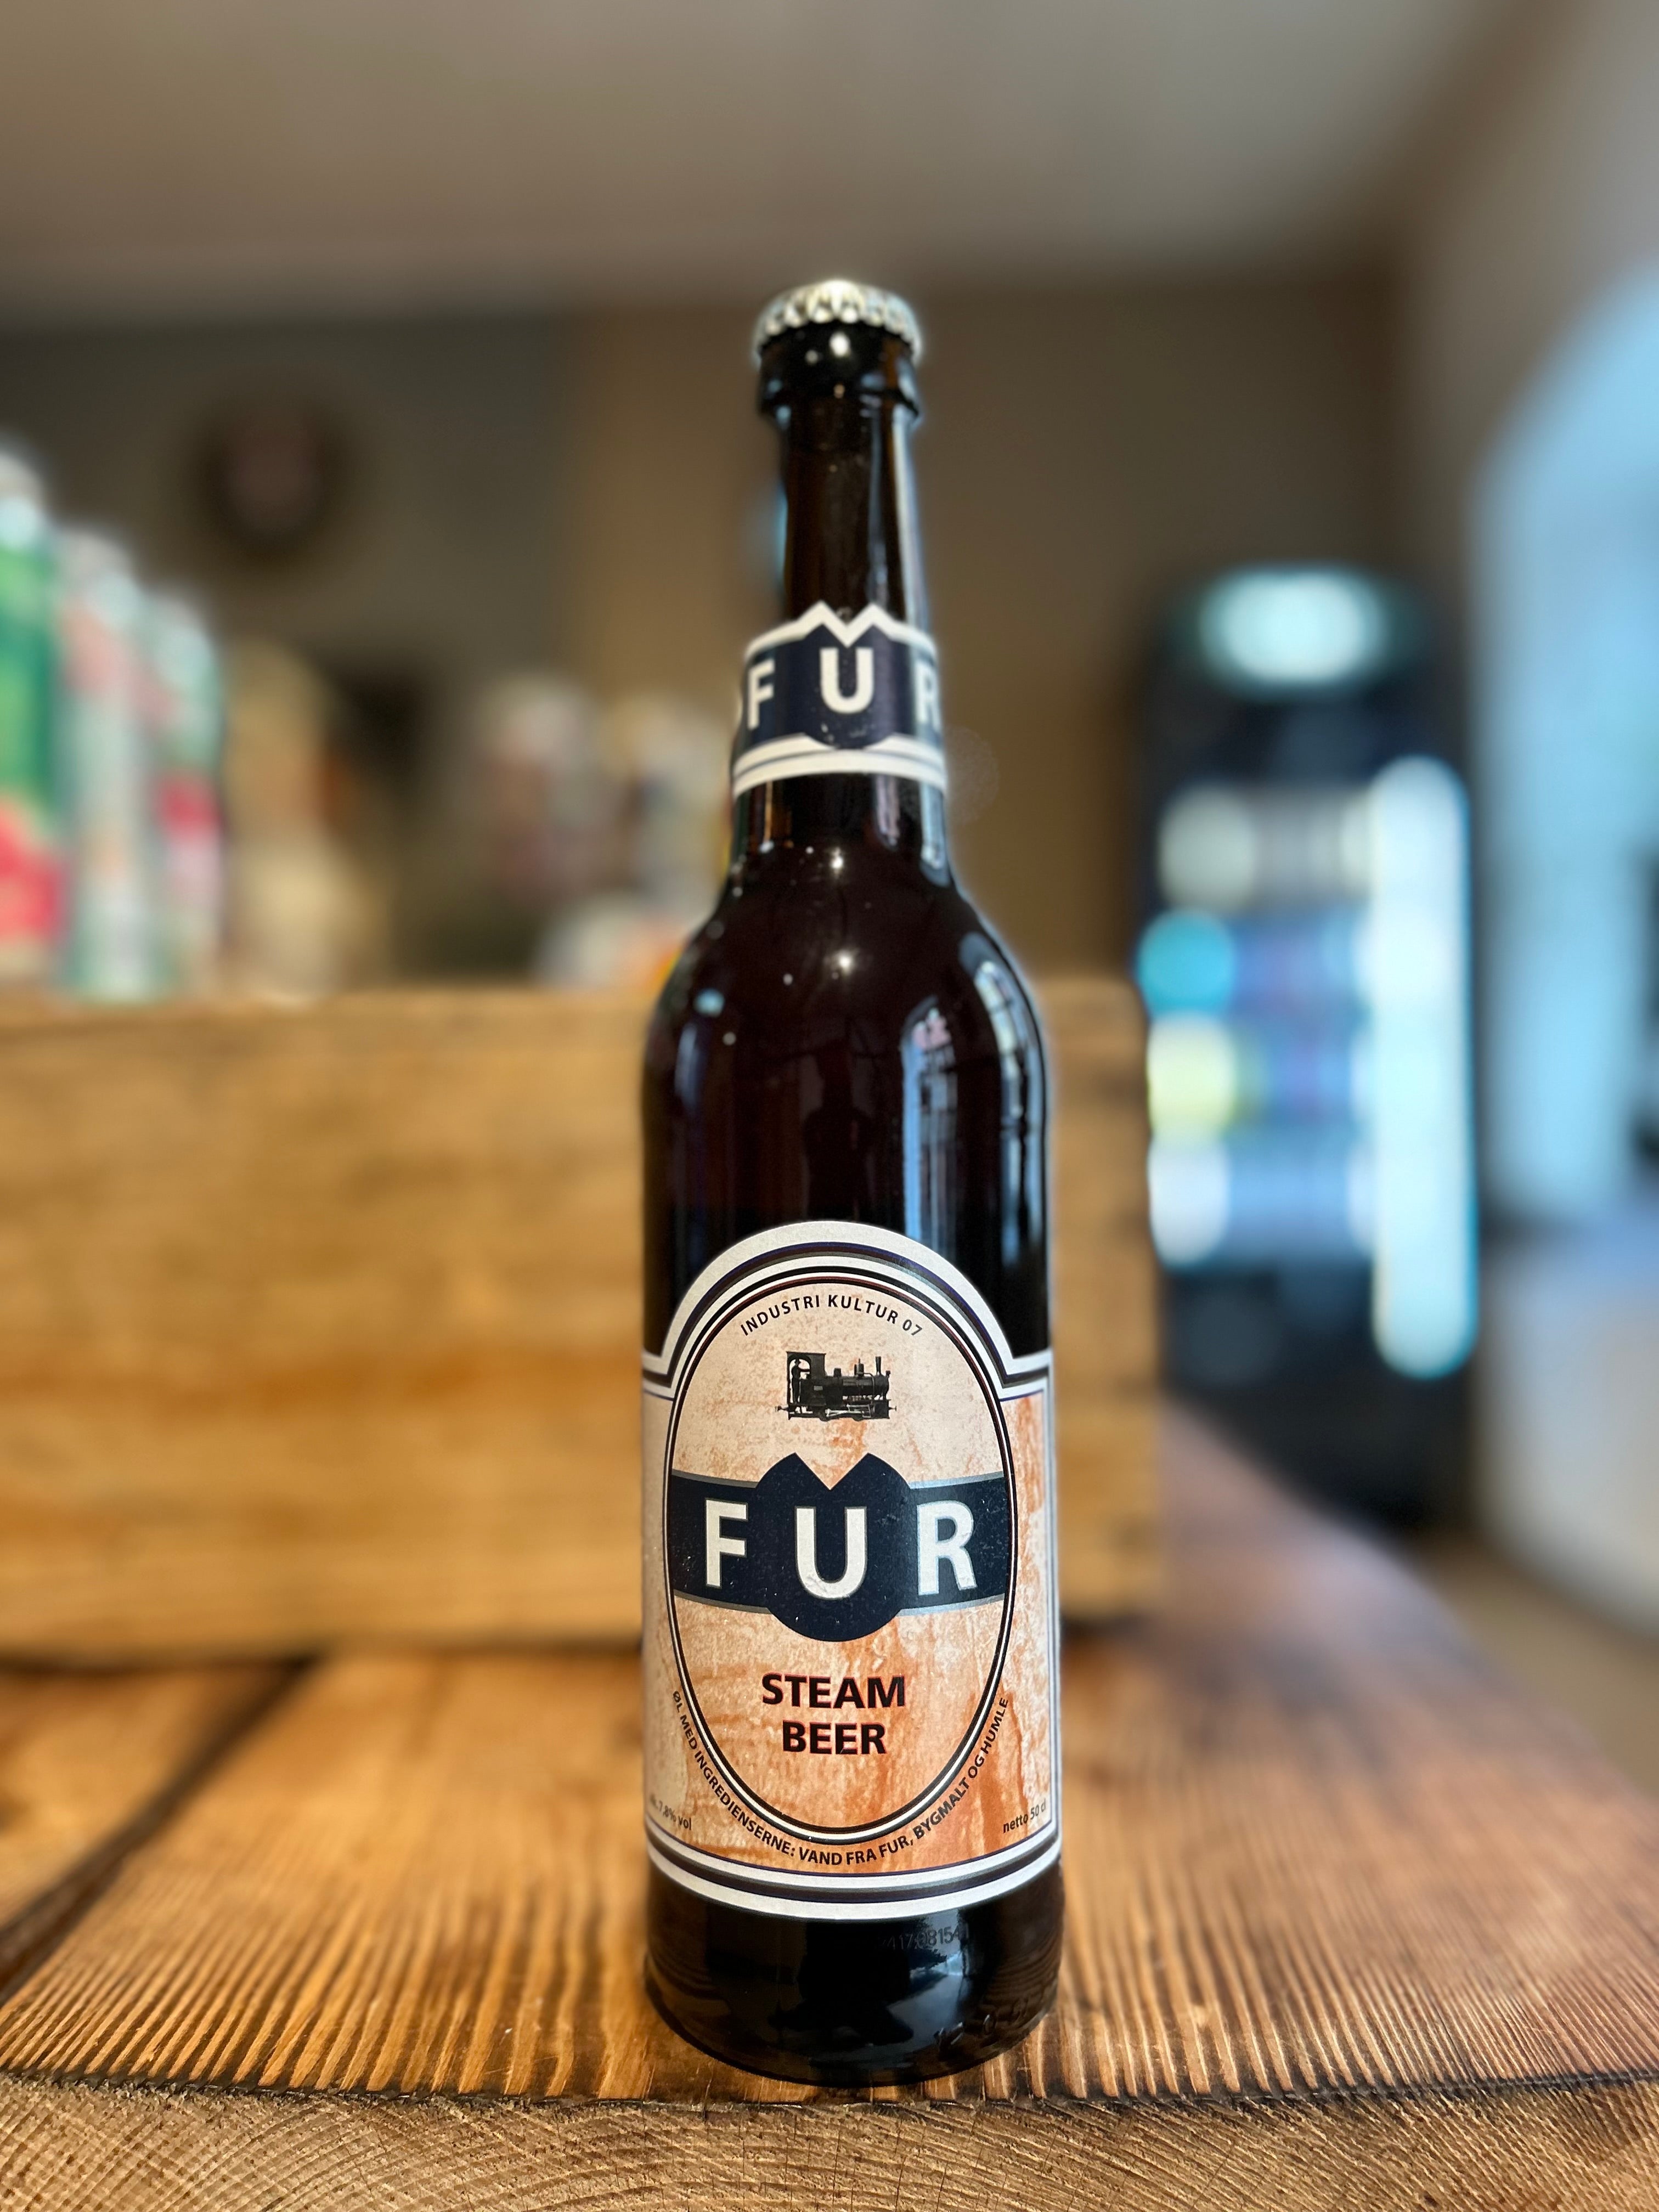 Fur Bryghus: Steam Beer - Din Ølhandler